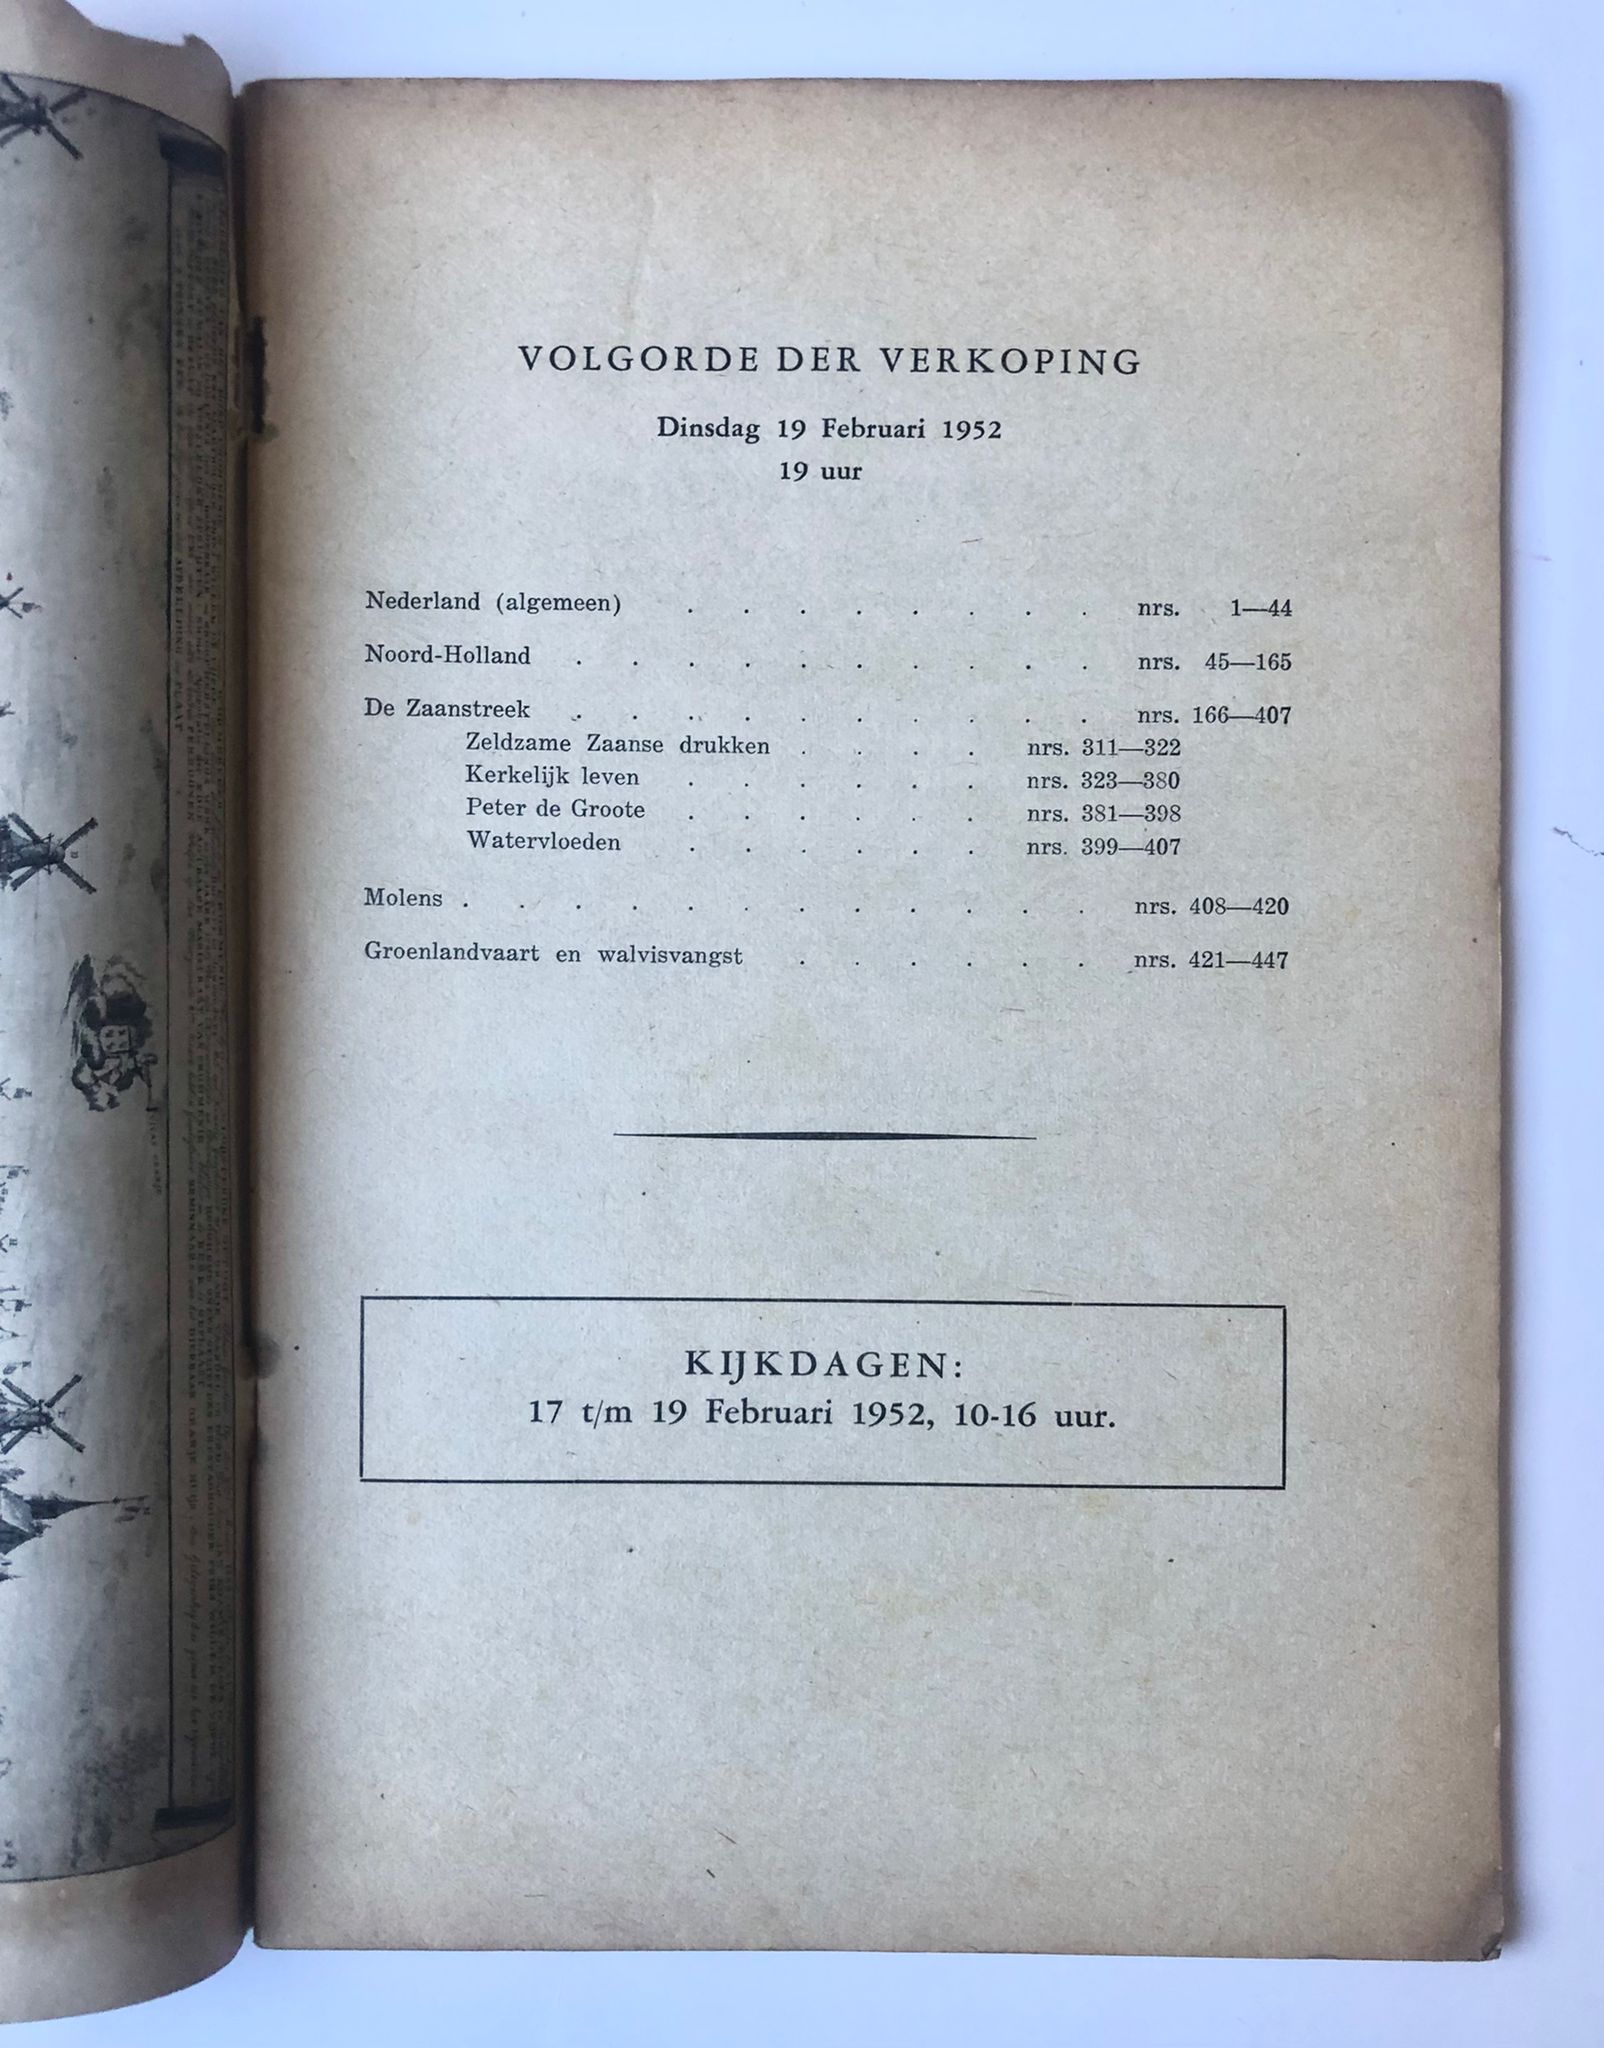 [Auction catalogue, Veiling, 1952] Veiling van boeken en prenten over de Zaanstreek en over andere delen van Noord-Holland. Dinsdag 19 Februari 1952 19 uur, J. L. Beijers N.V. Utrecht, 47 pp.